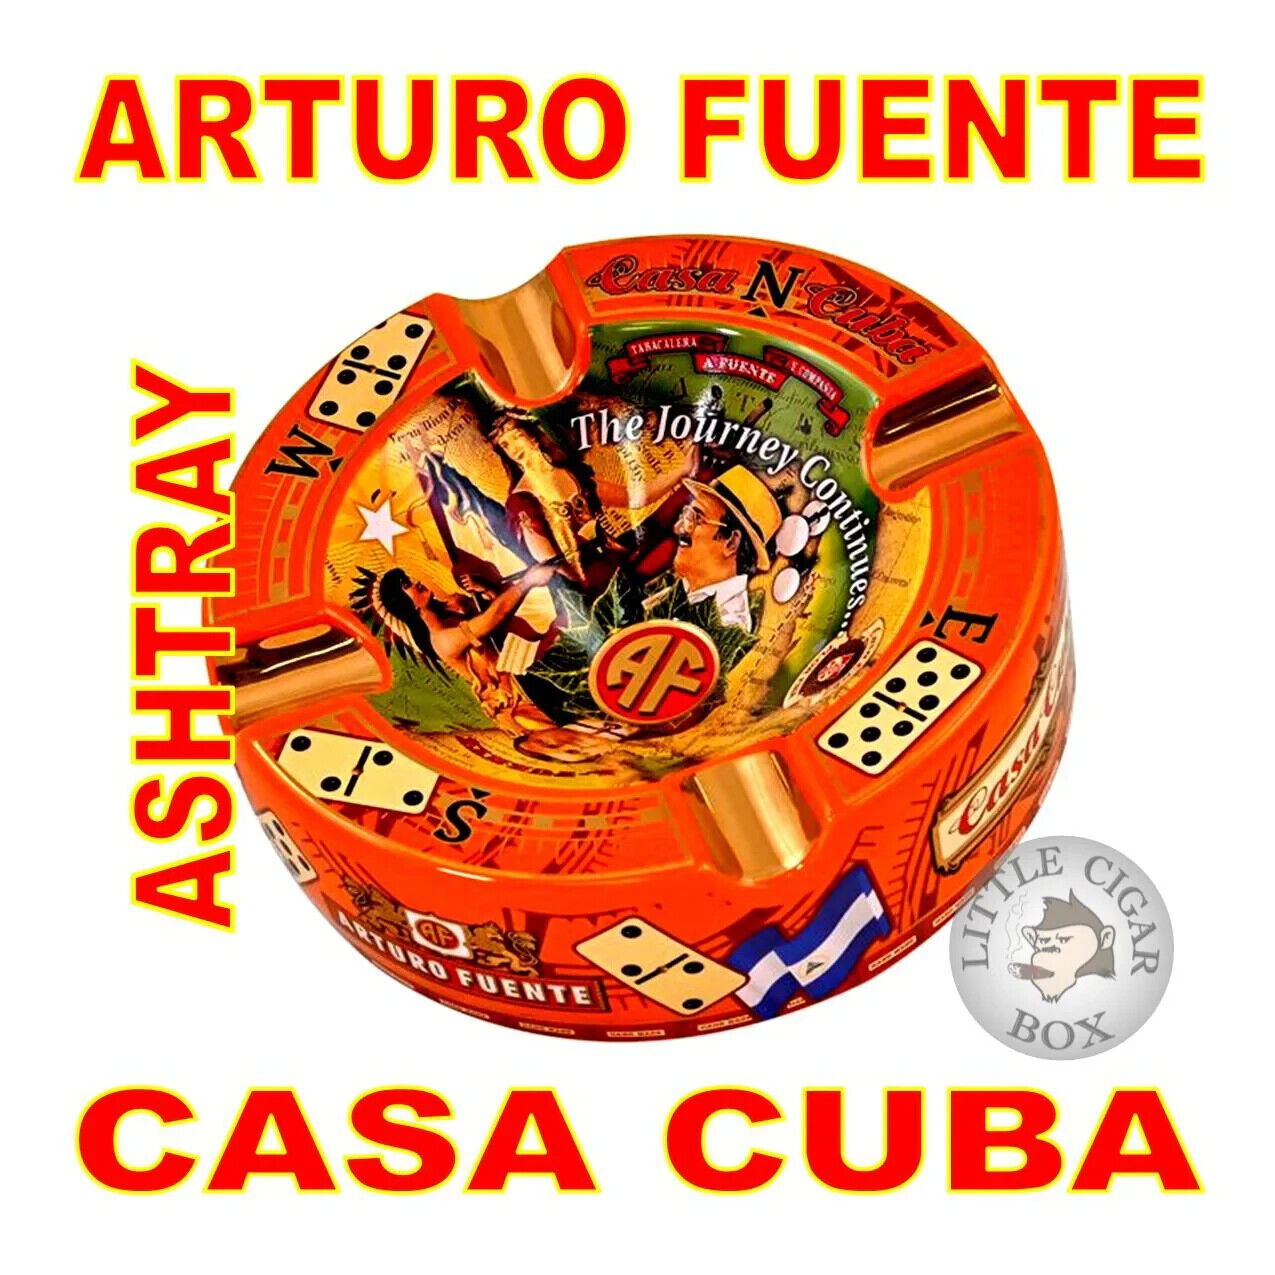 Arturo Fuente 'Special Edition' Casa Cuba Ceramic Cigar Ashtray